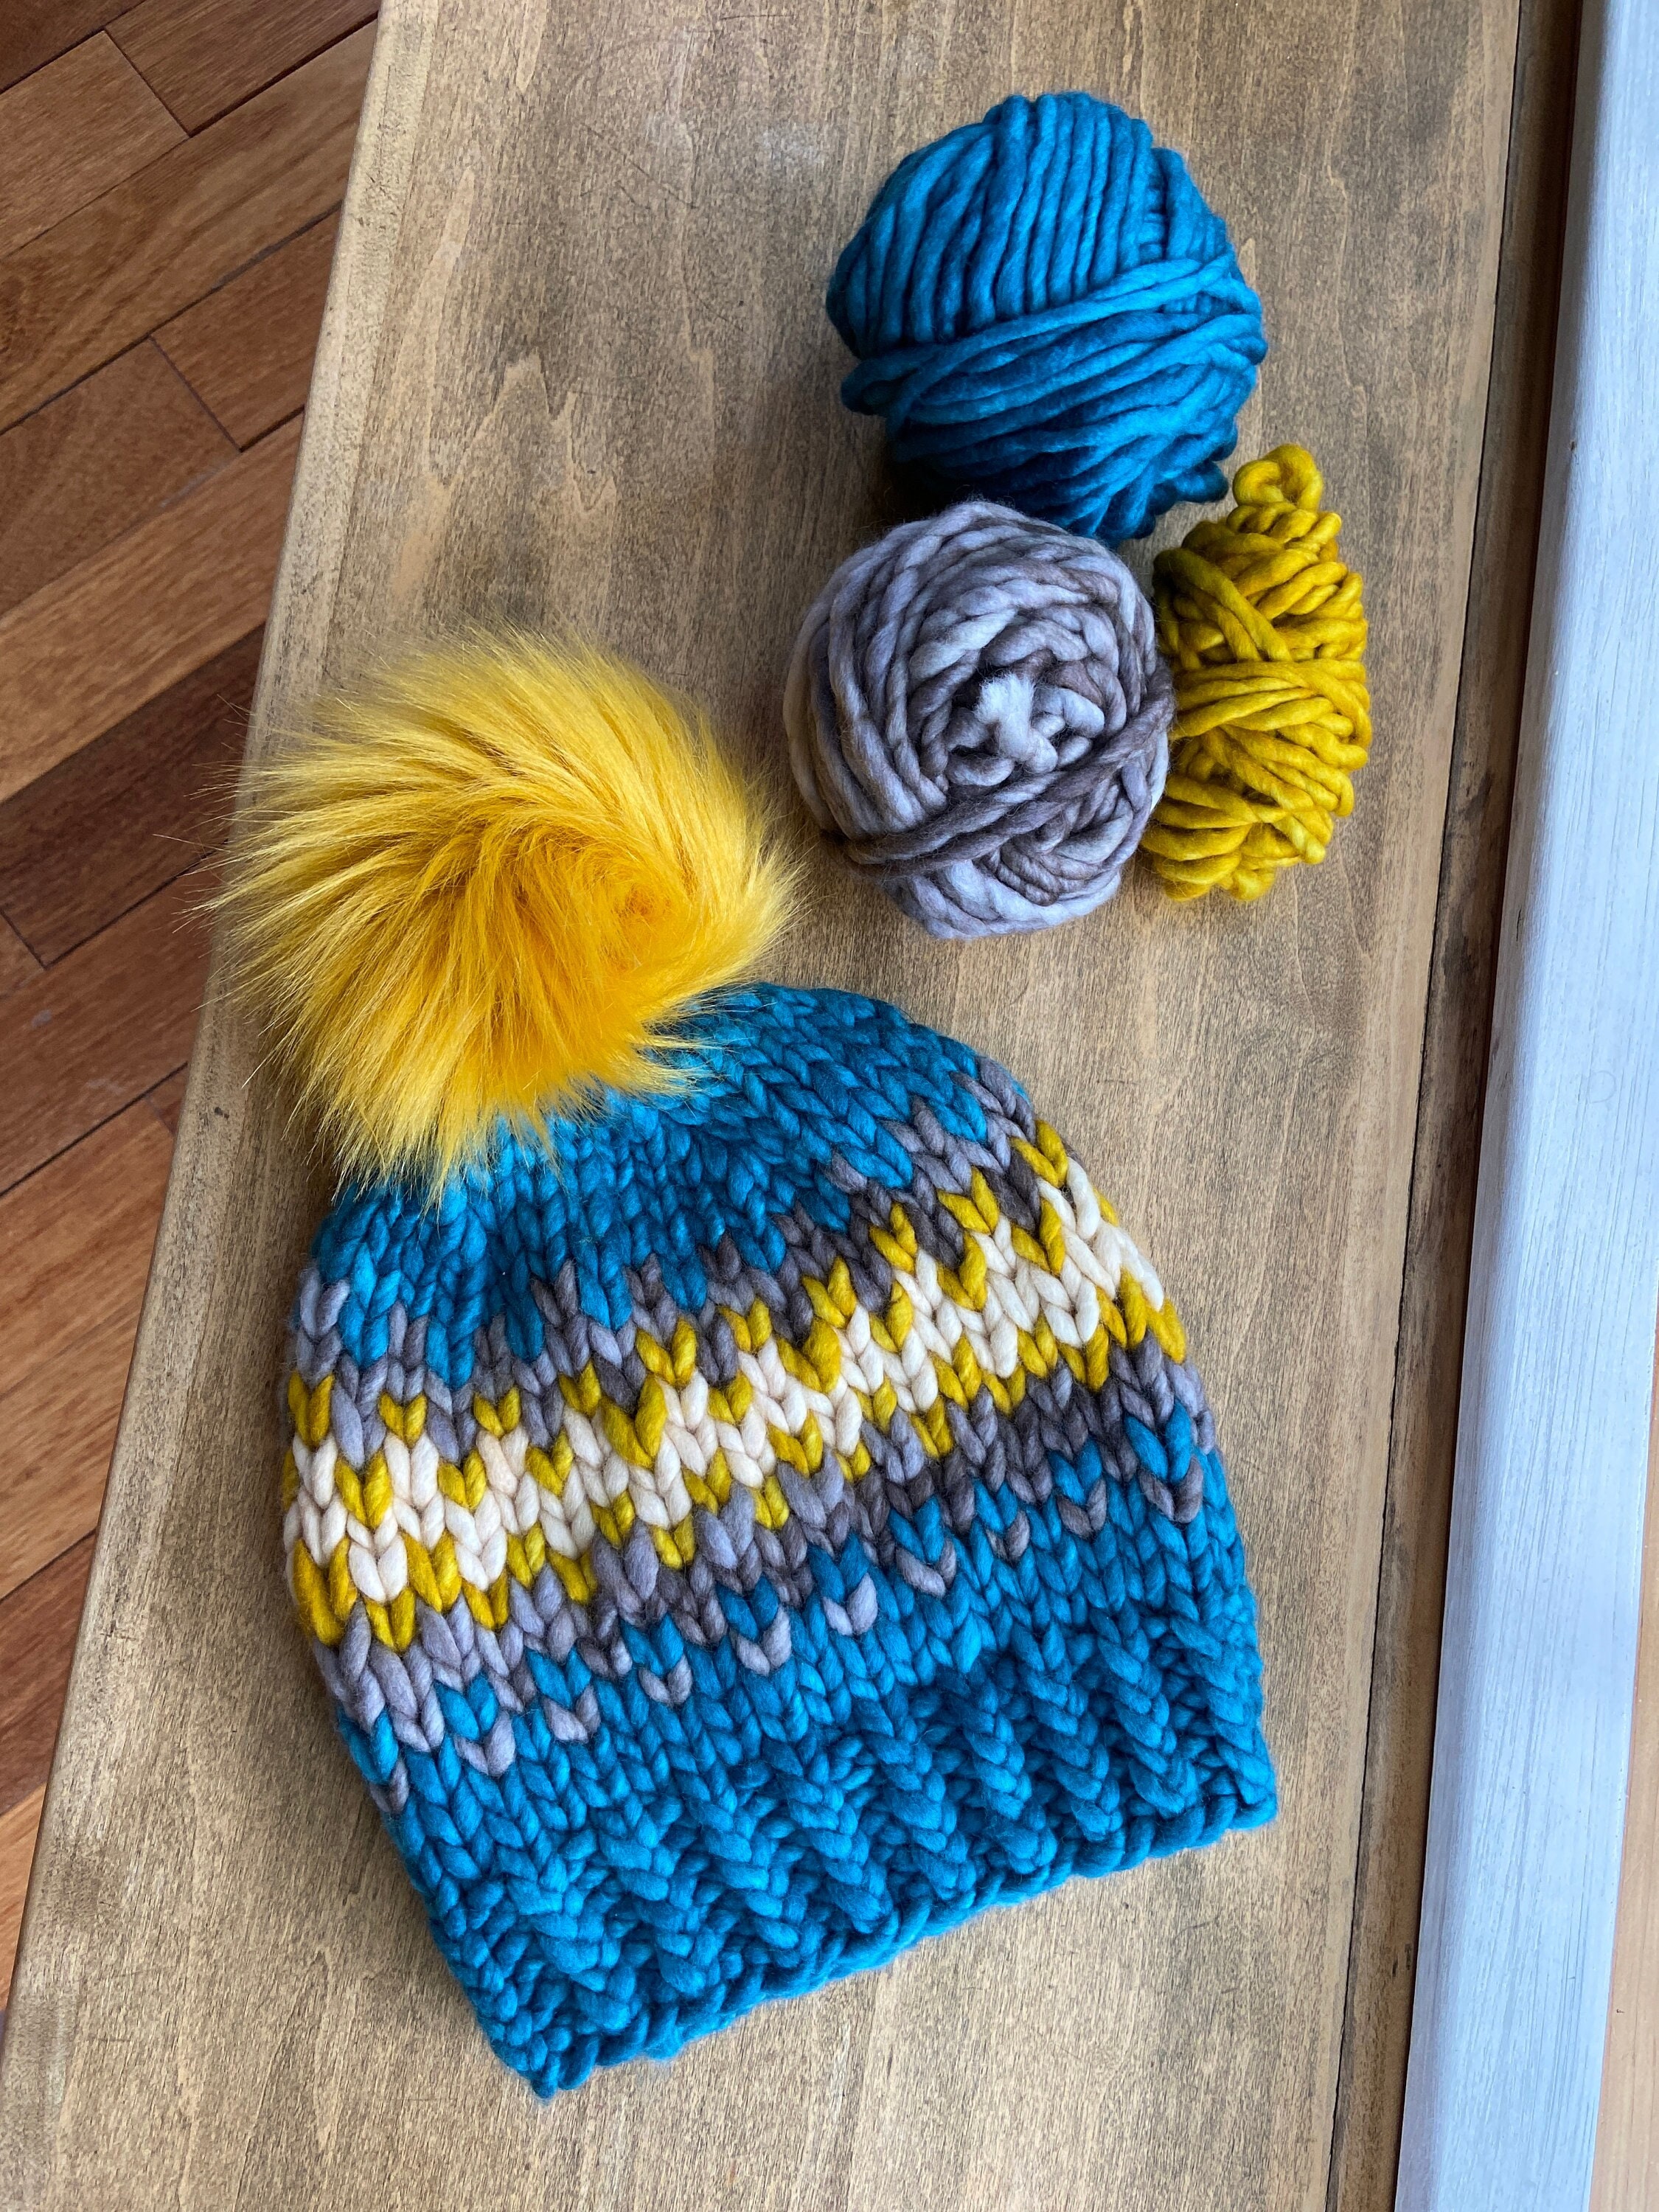 Soft Itch Free Knitting Yarn, Wool Blend Yarn, Multicolor Yarn, 100g/165m,  3.5 Oz./180 Yards, Phil MIKADO in Color PETUNIA 